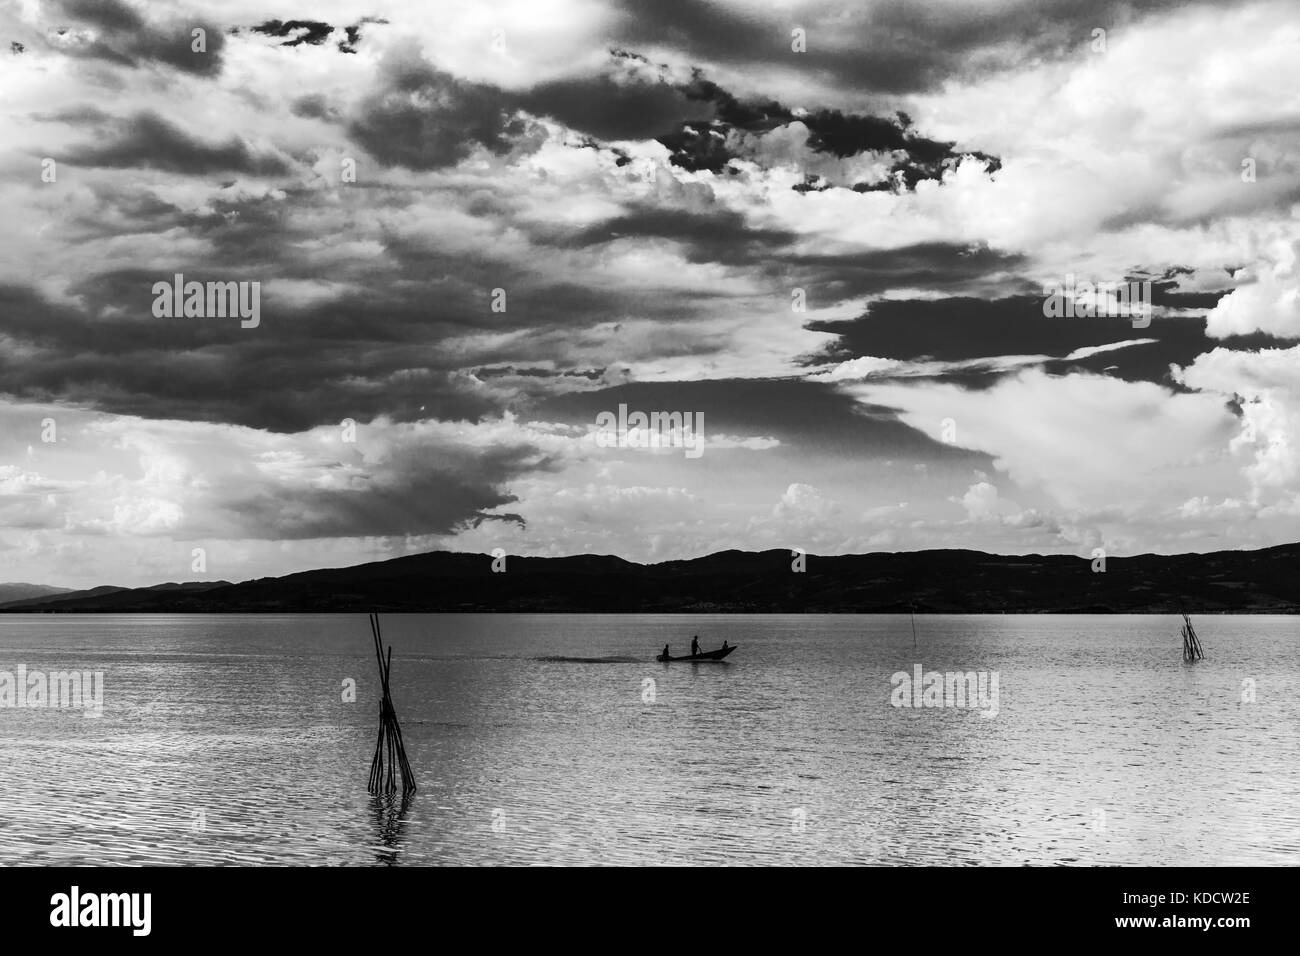 Una piccola barca con alcune persone su un lago, sotto una splendida, deep sky con nuvole bianche Foto Stock